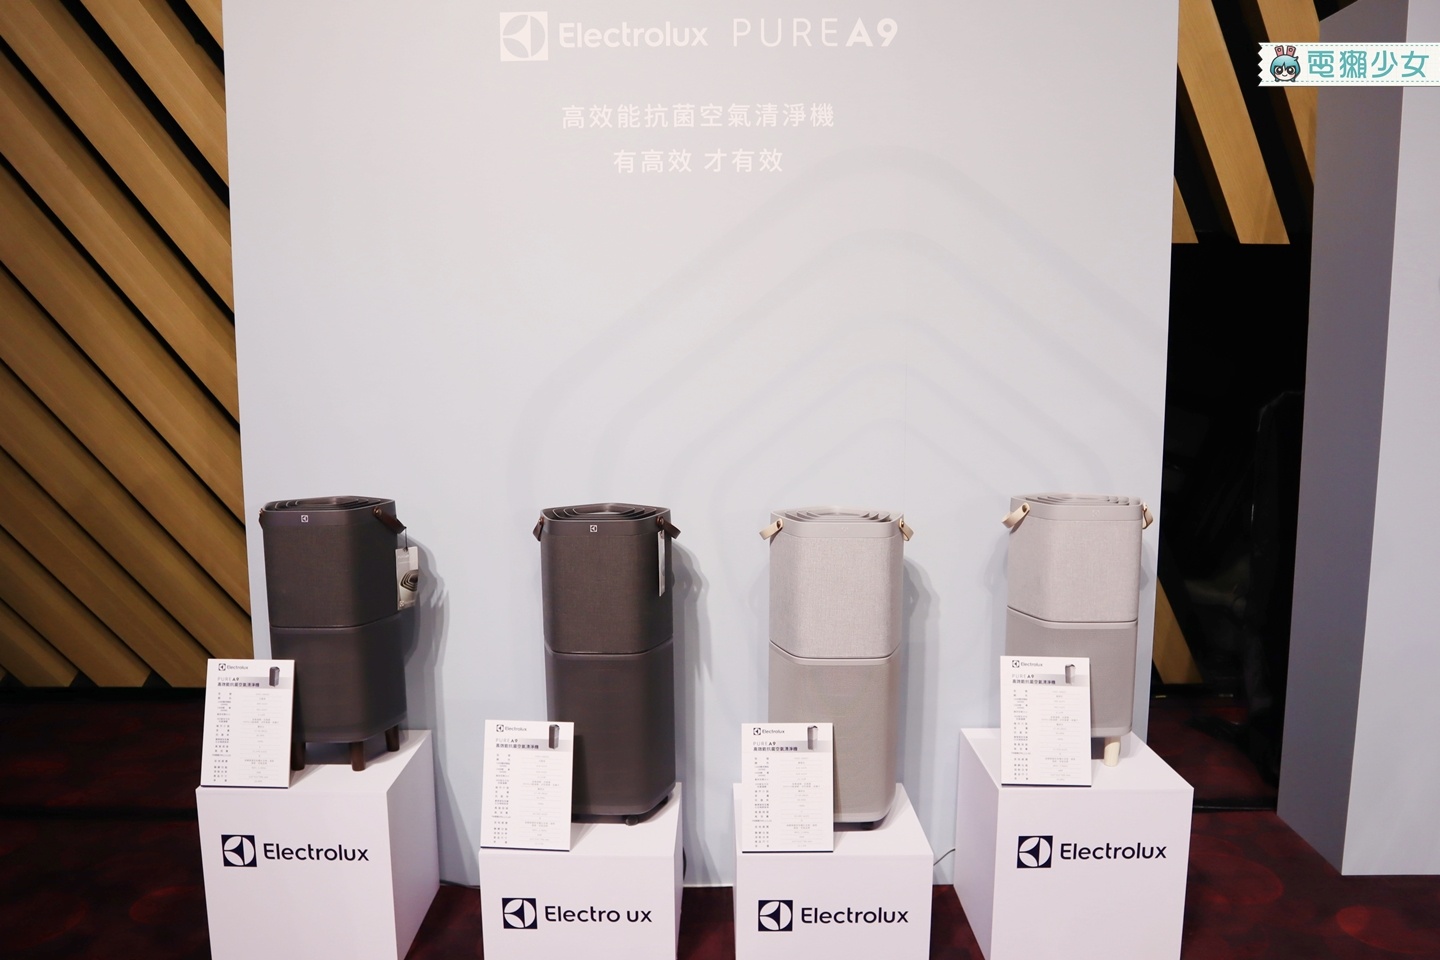 出門｜百年精品家電伊萊克斯 空氣清淨機Pure A9與強效吸塵器Pure Q9正式在台上市